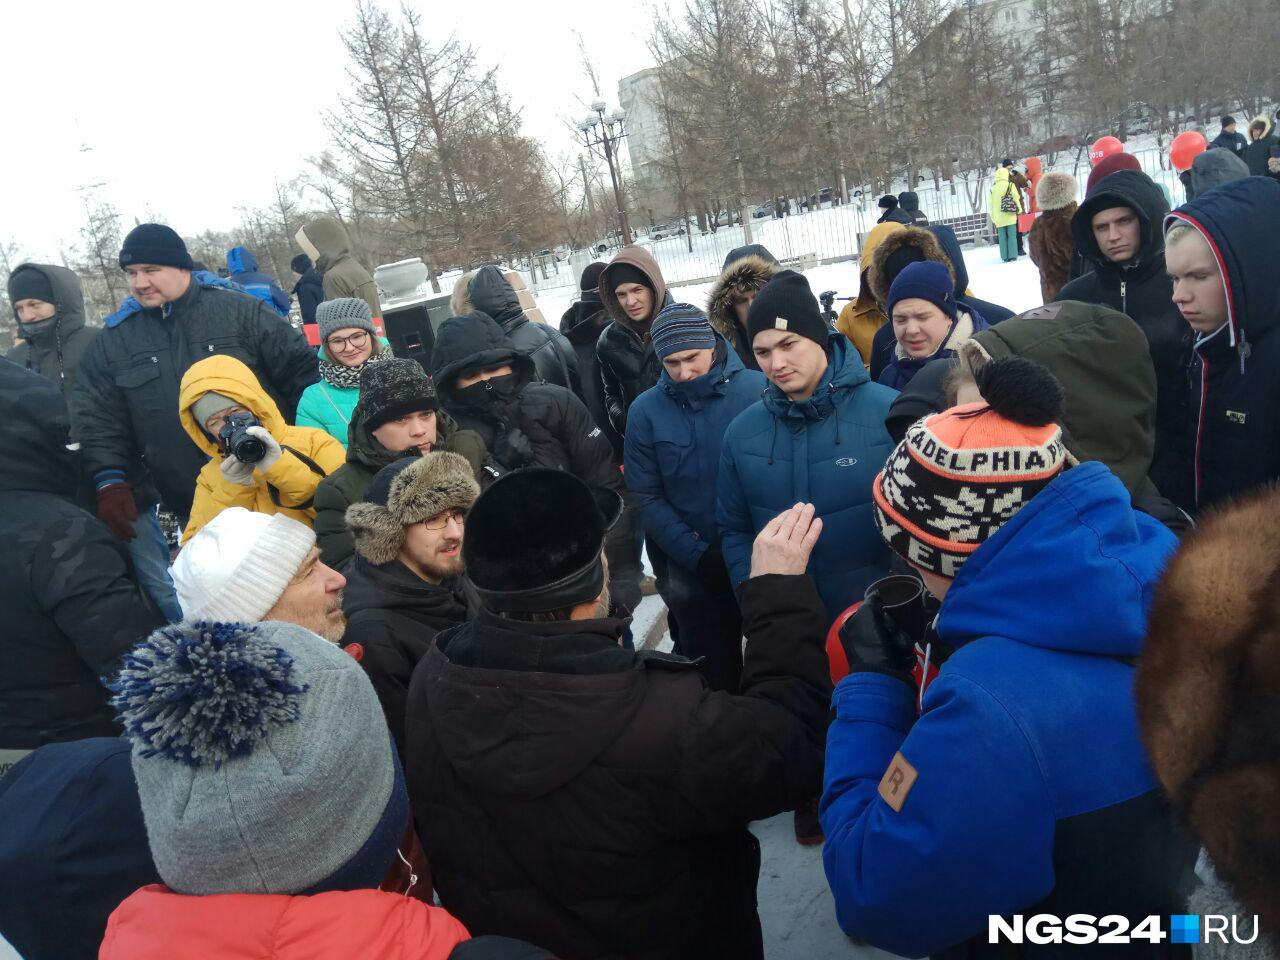 Спустя 40 минут в сквере к себе внимание привлекал только местный активист Александр Потылицын